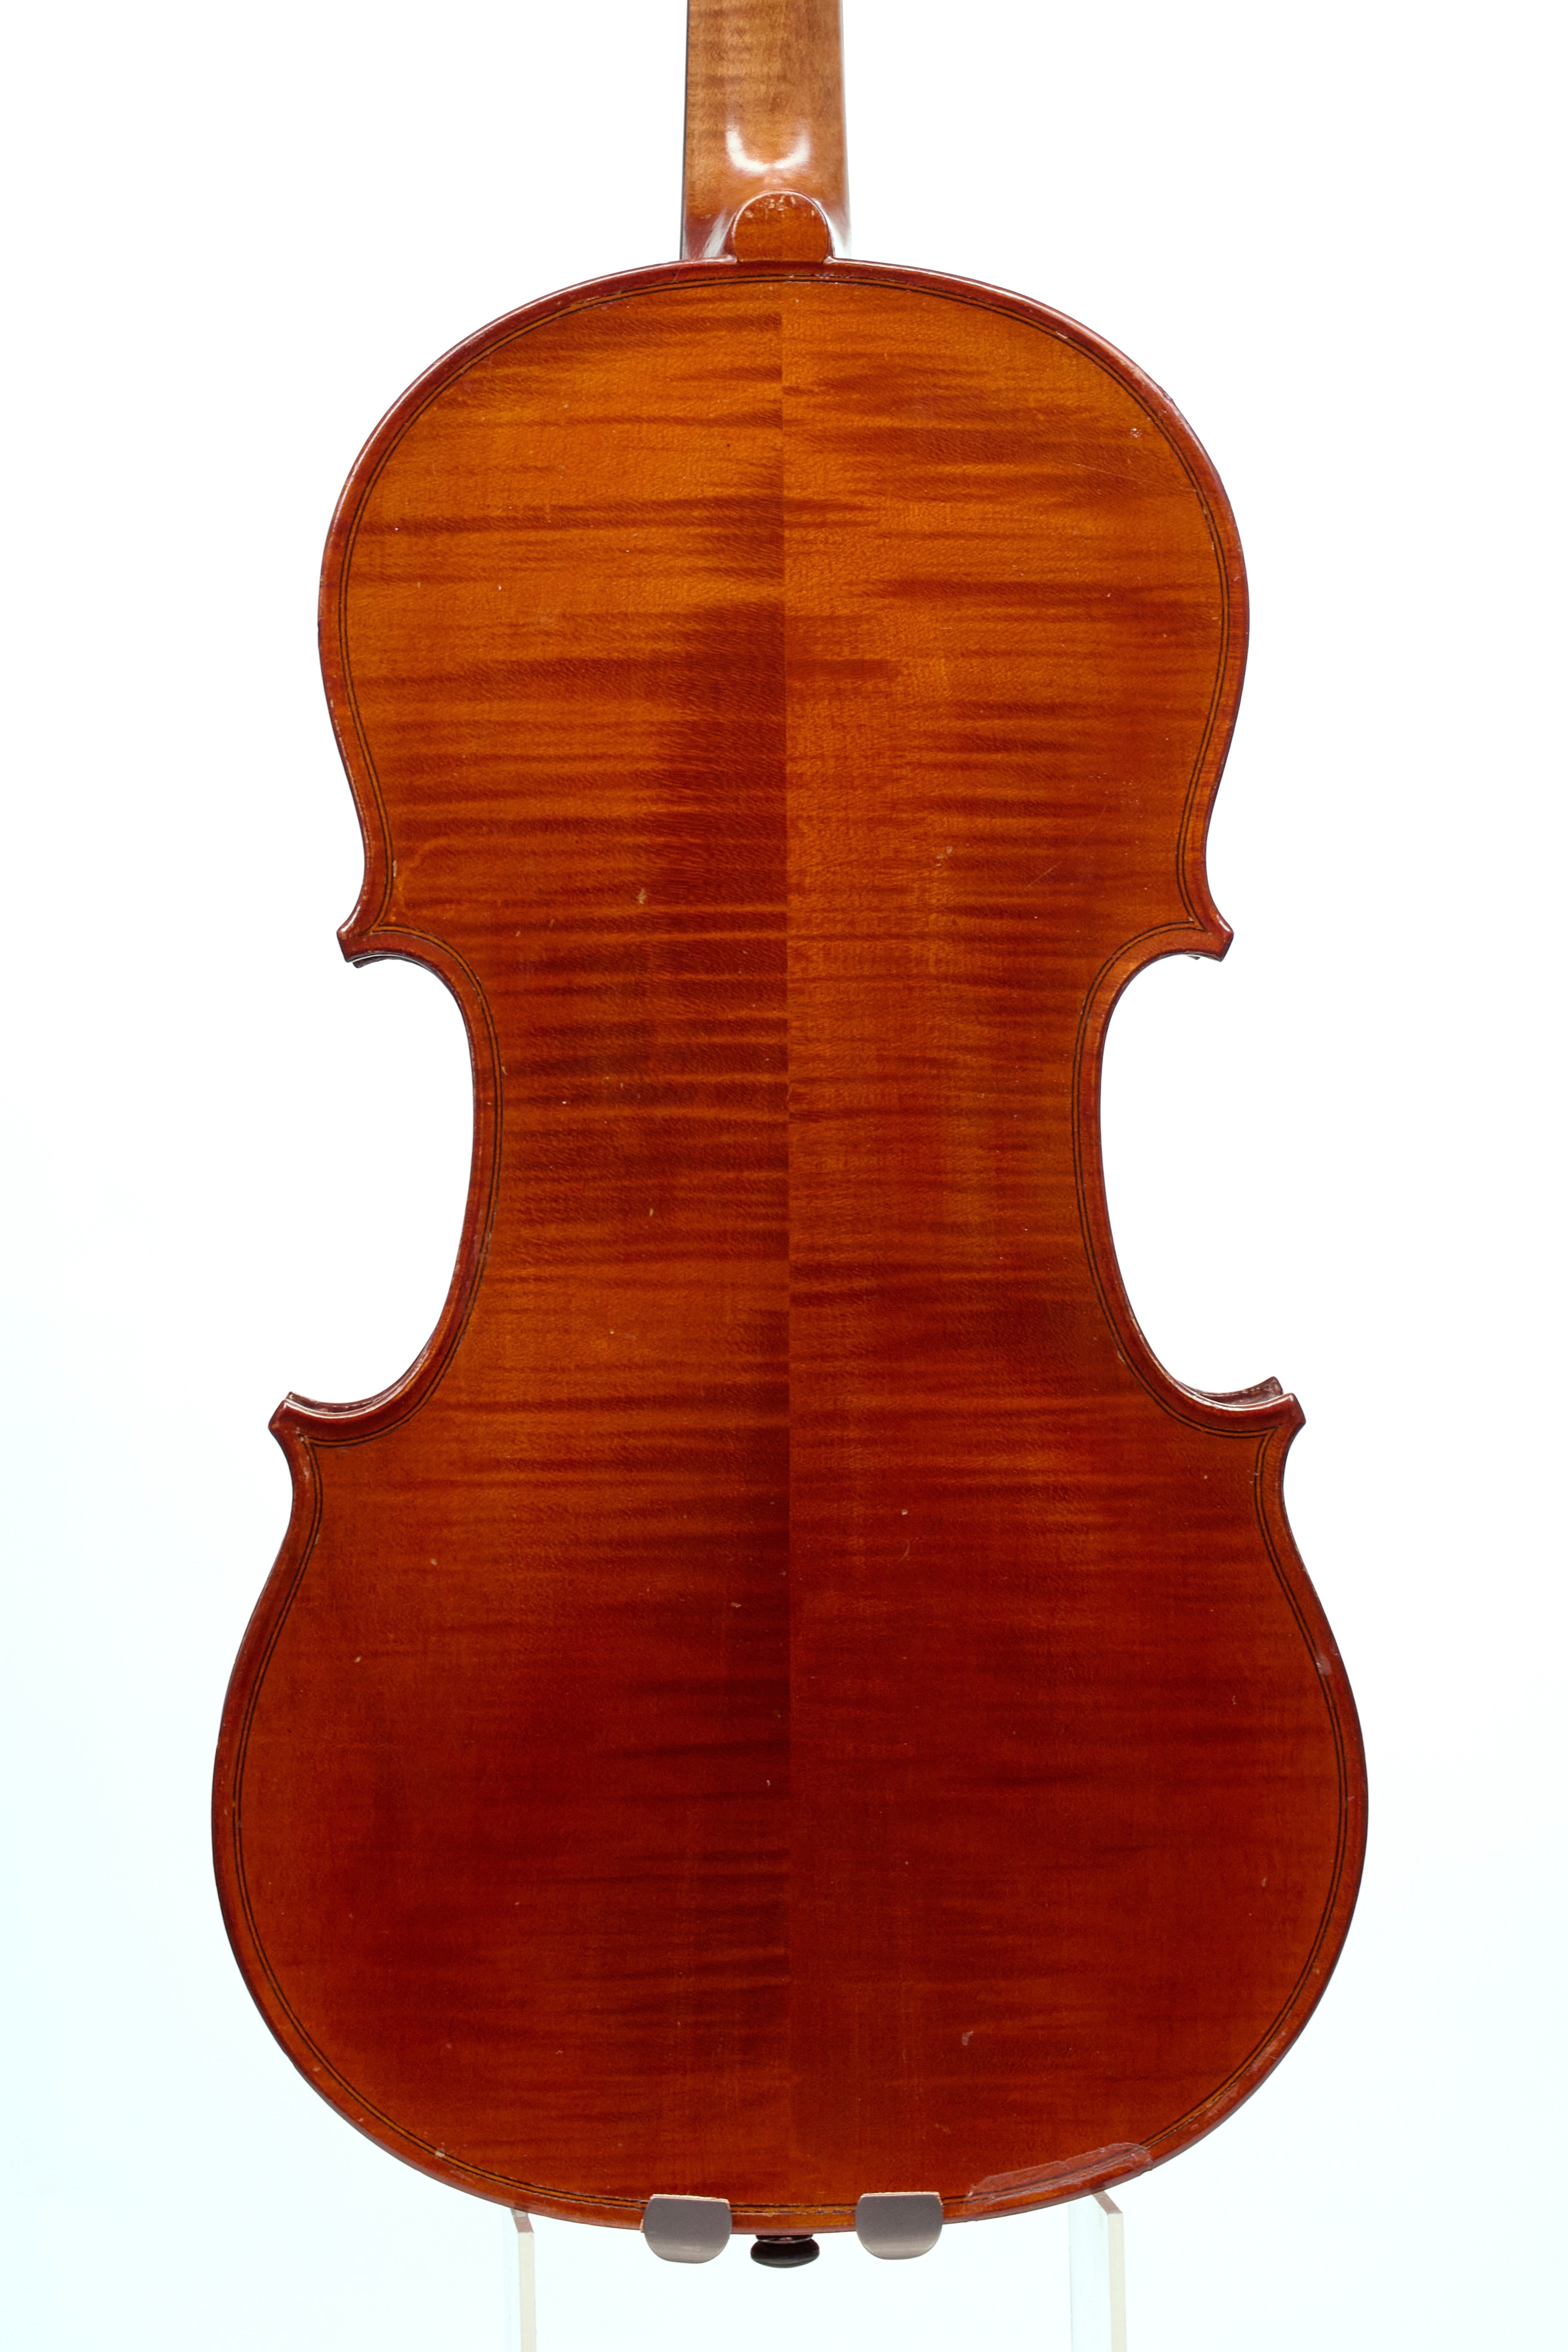 Leon Bernardel II Workshop Violin 1936. France.